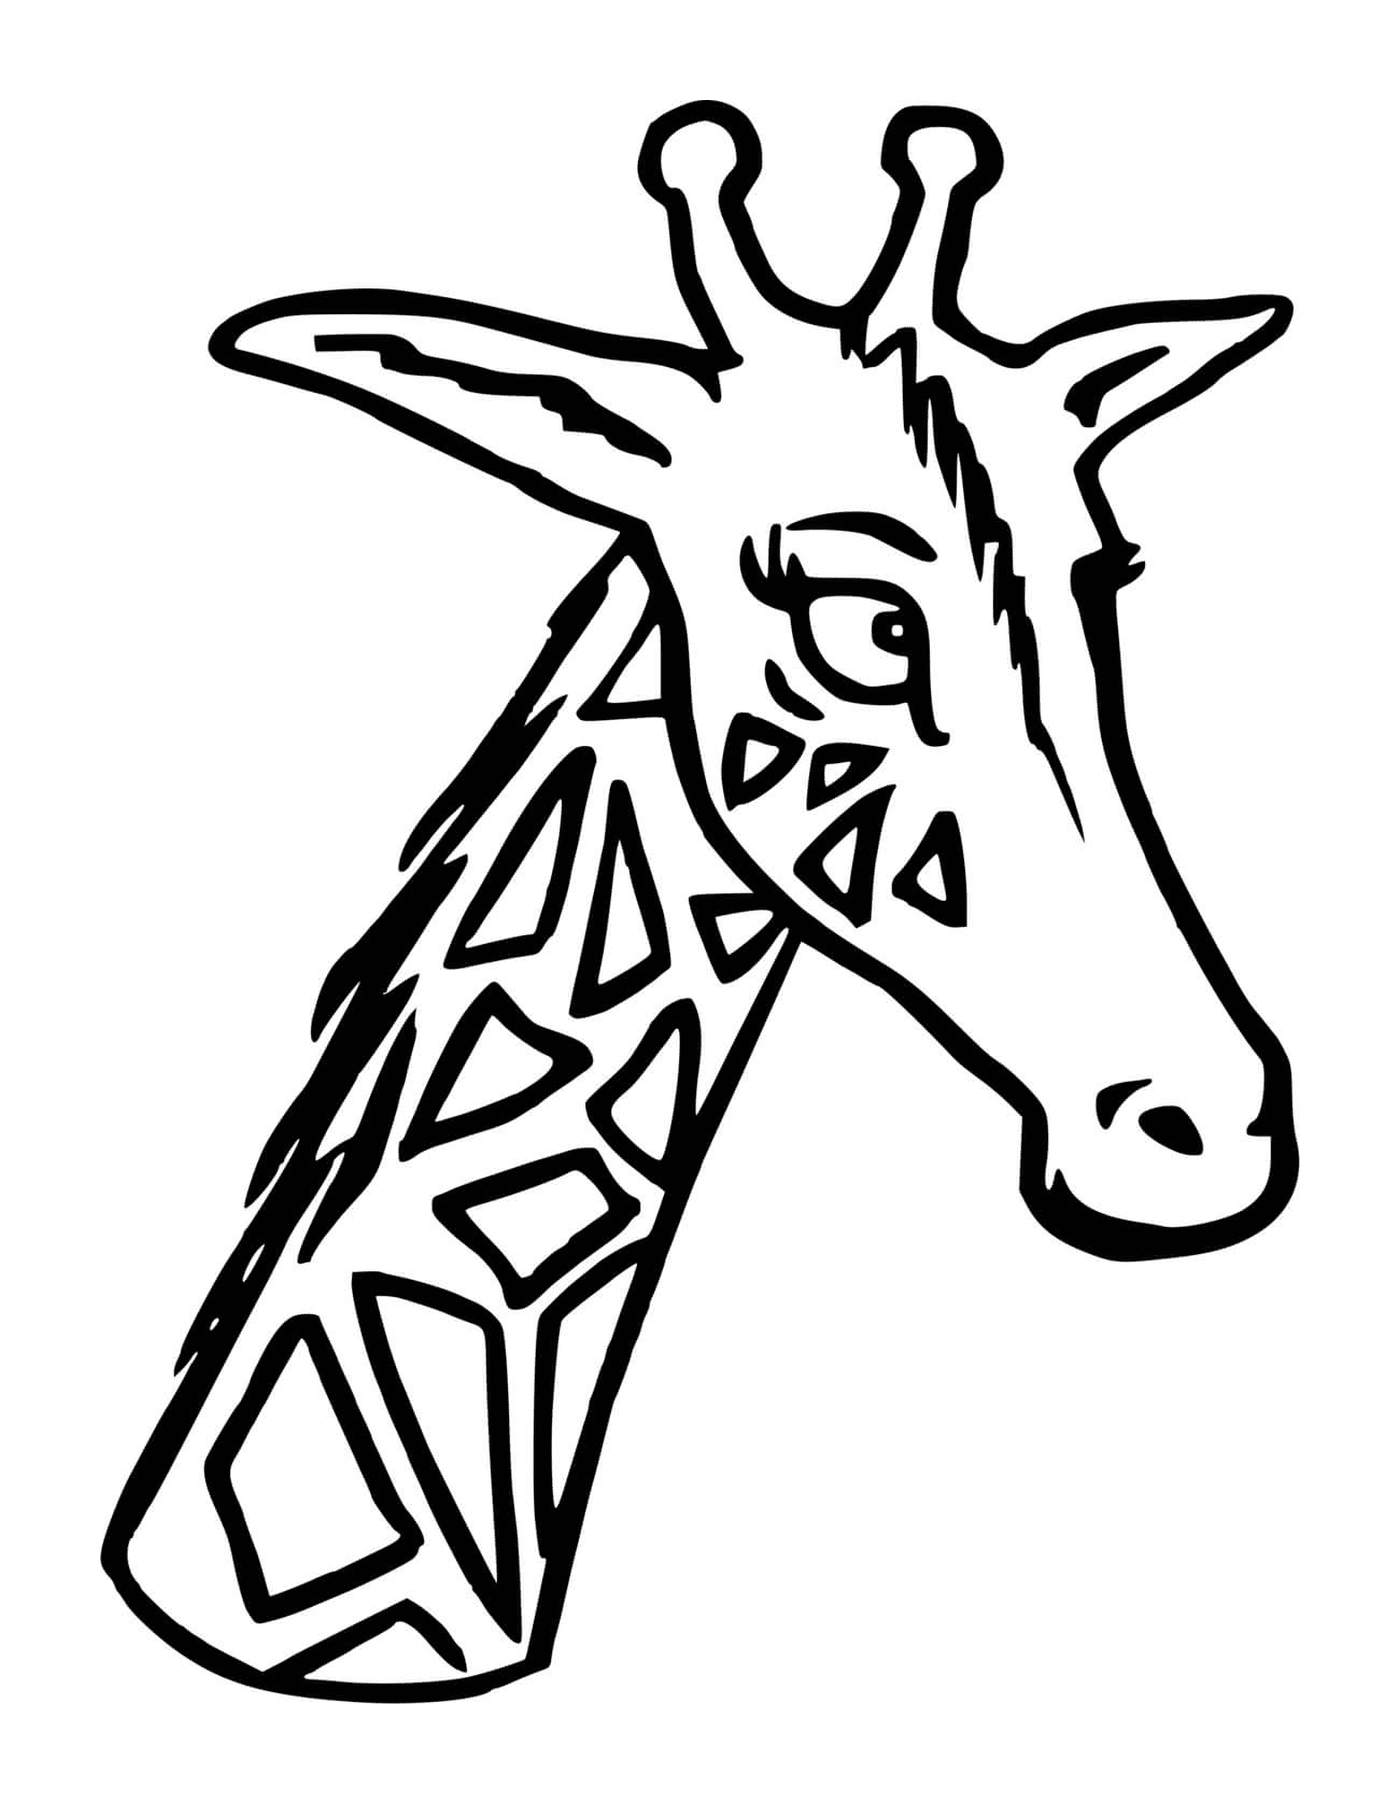  Una jirafa con la cabeza y el cuello largos 